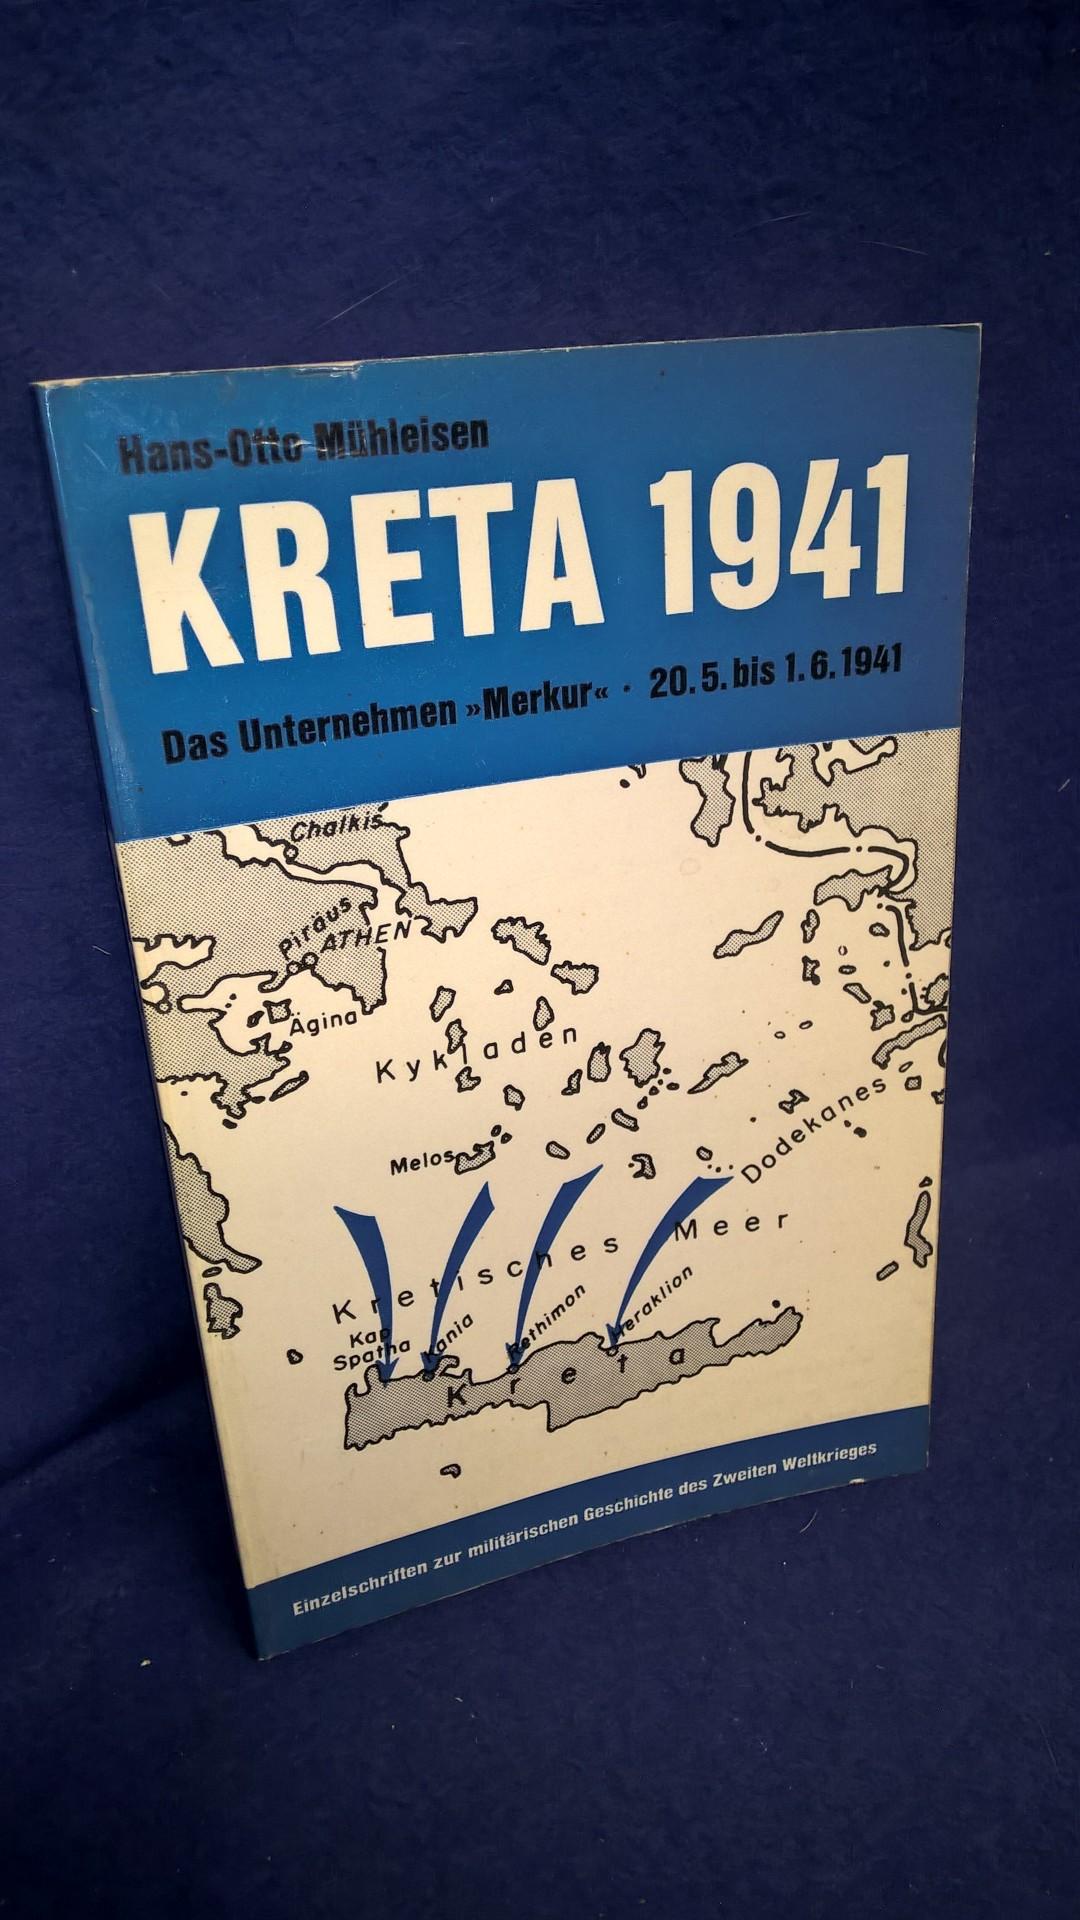 Kreta 1941. Das Unternehmen "Merkur" am 20.5. bis 1.6.1941. Aus der Reihe: Einzelschriften zur militärischen Geschichte des zweiten Weltkrieges,Band 3.